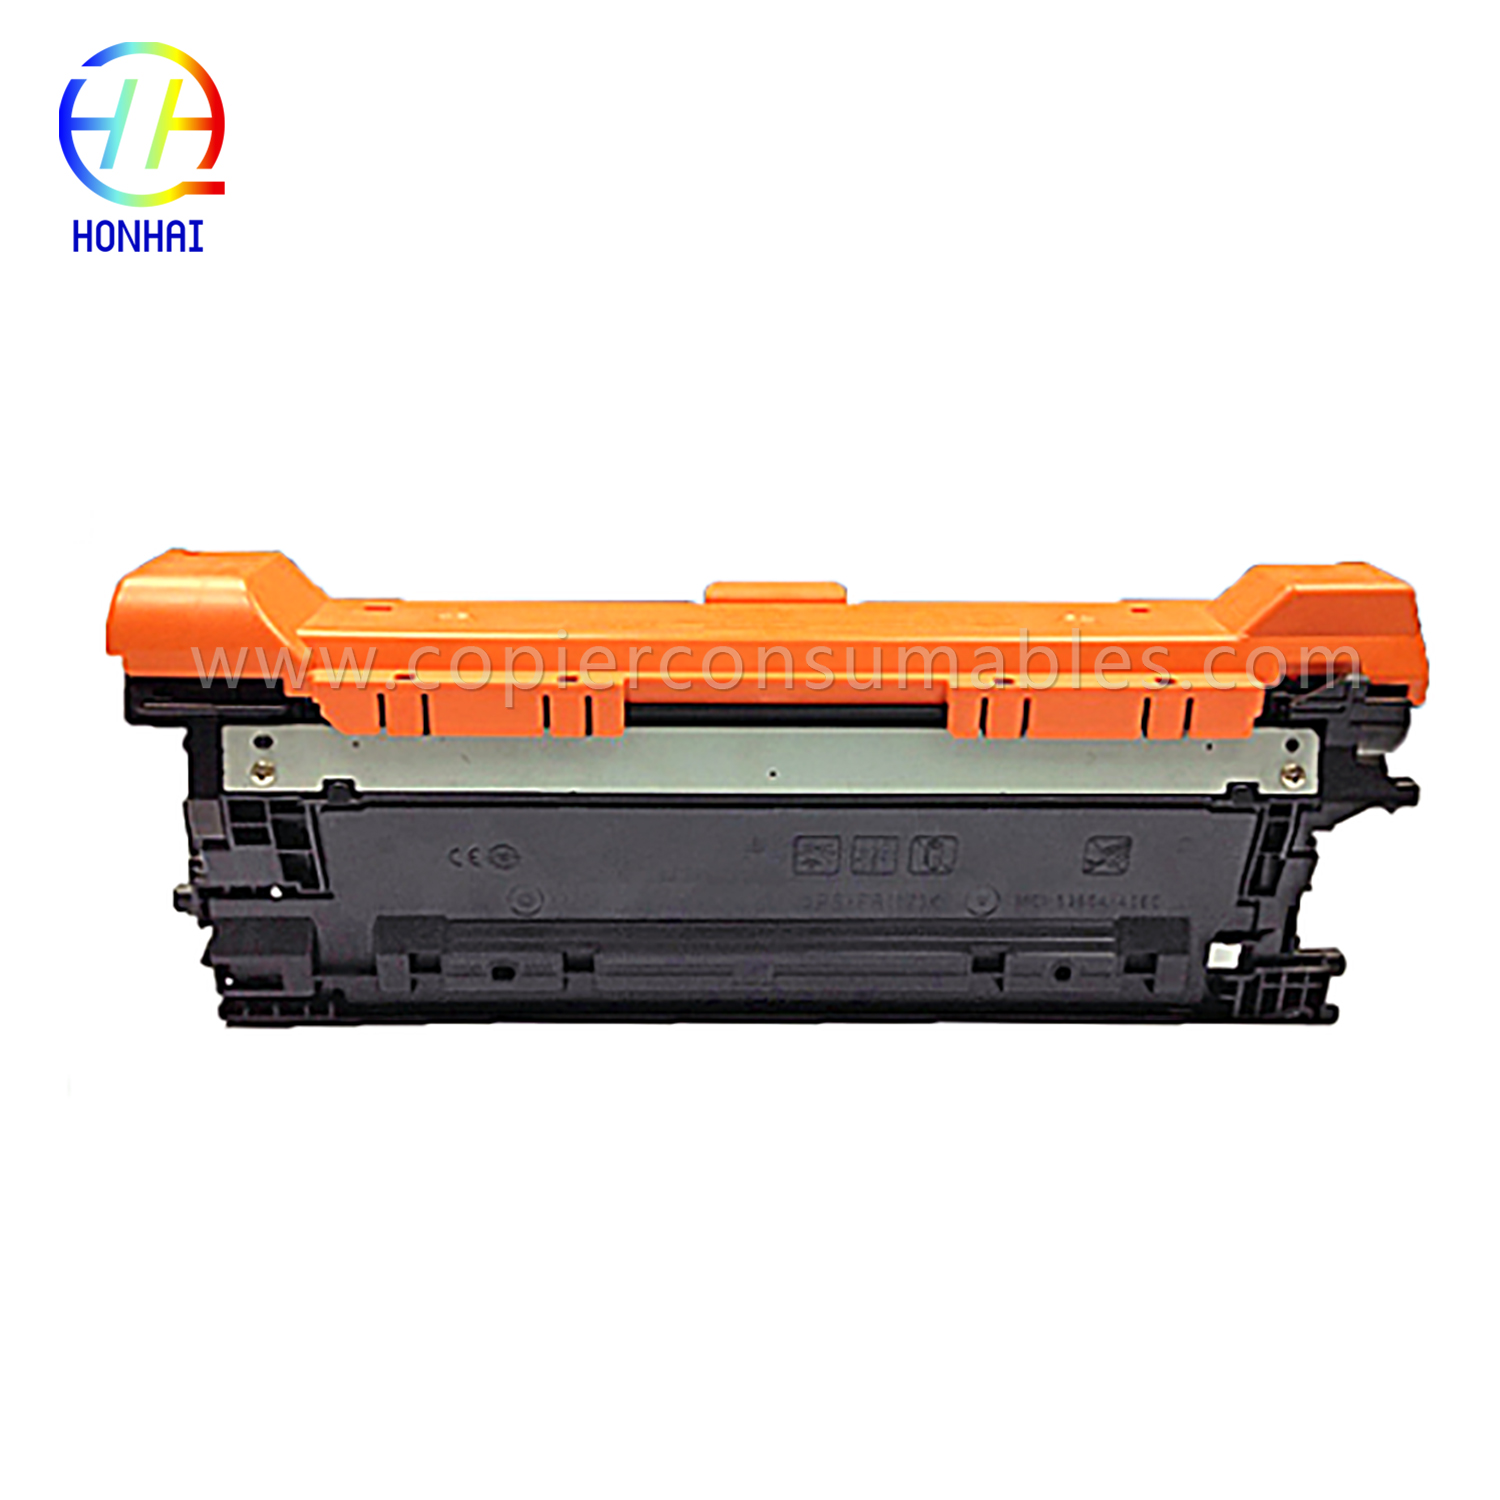 Cartan Toner Dhathan HP Color Laserjet Enterprise M552 M553 (CF362X) -1 拷贝